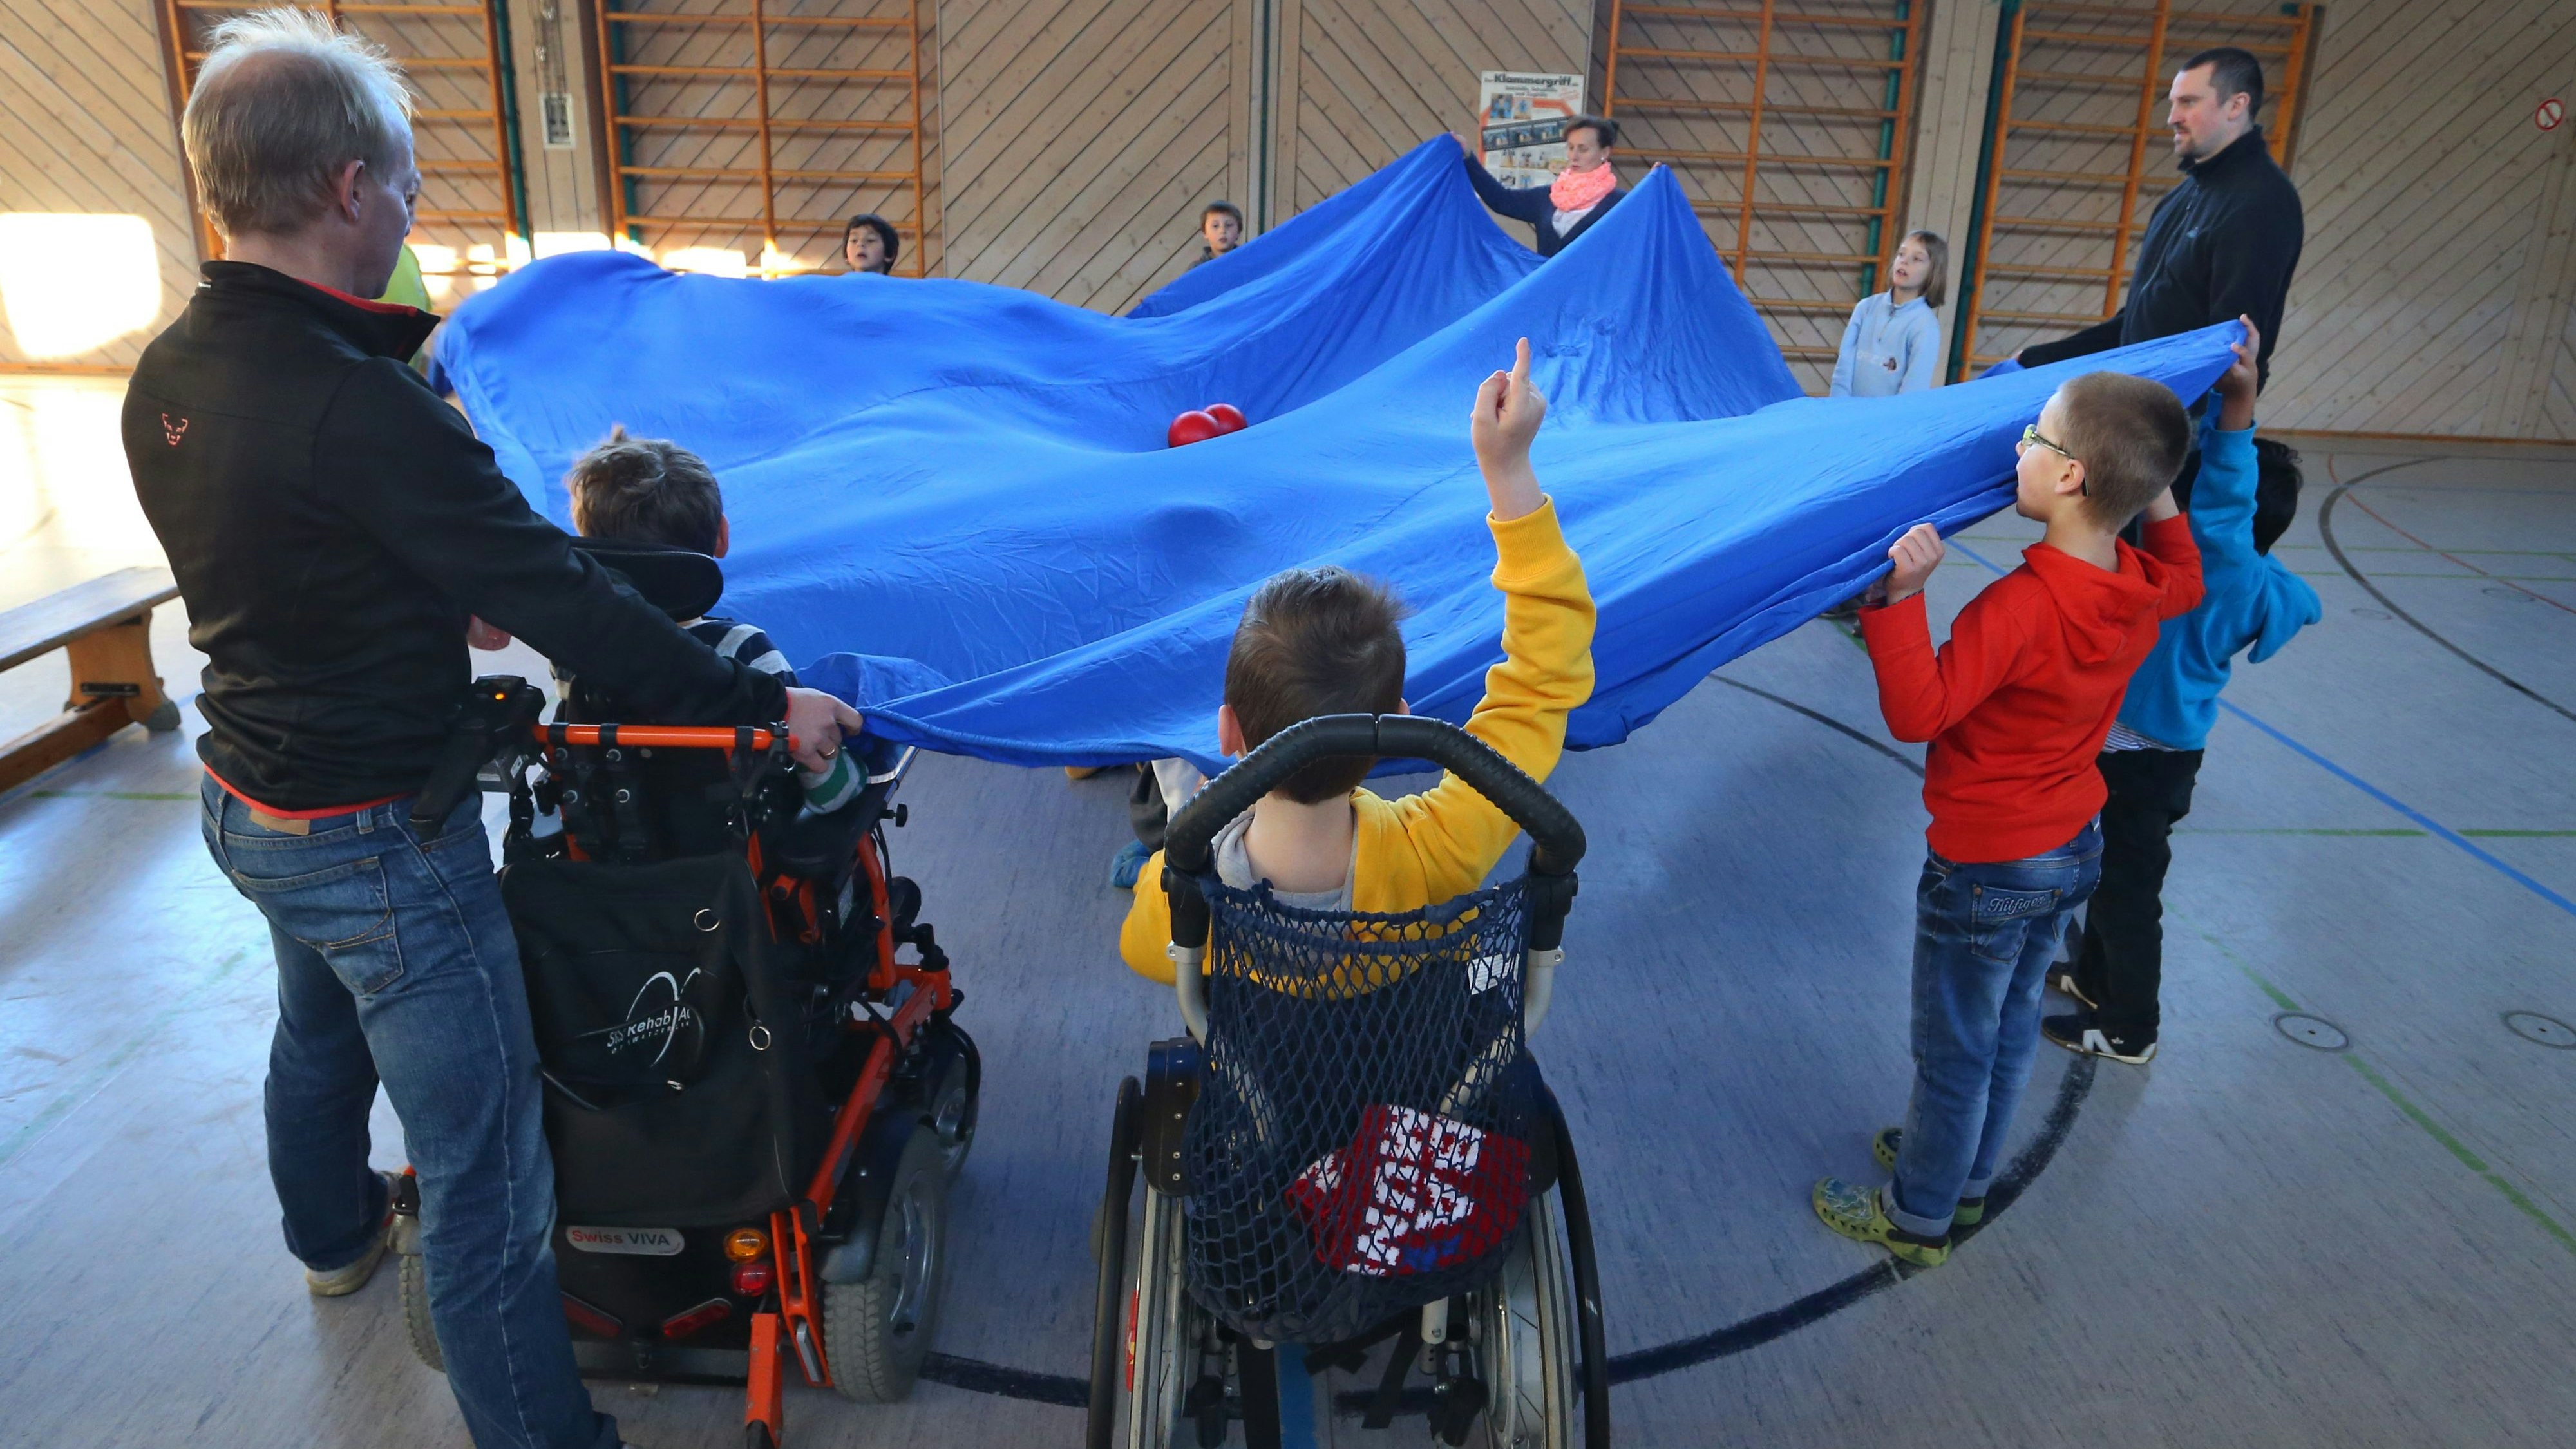 Das Sprungtuch ist in Pandemiezeiten für die Behindertenhilfe nicht gut gespannt. Oldenburgische Caritas-Vertreter üben detailliert Kritik. Foto: dpa/Hildenbrand